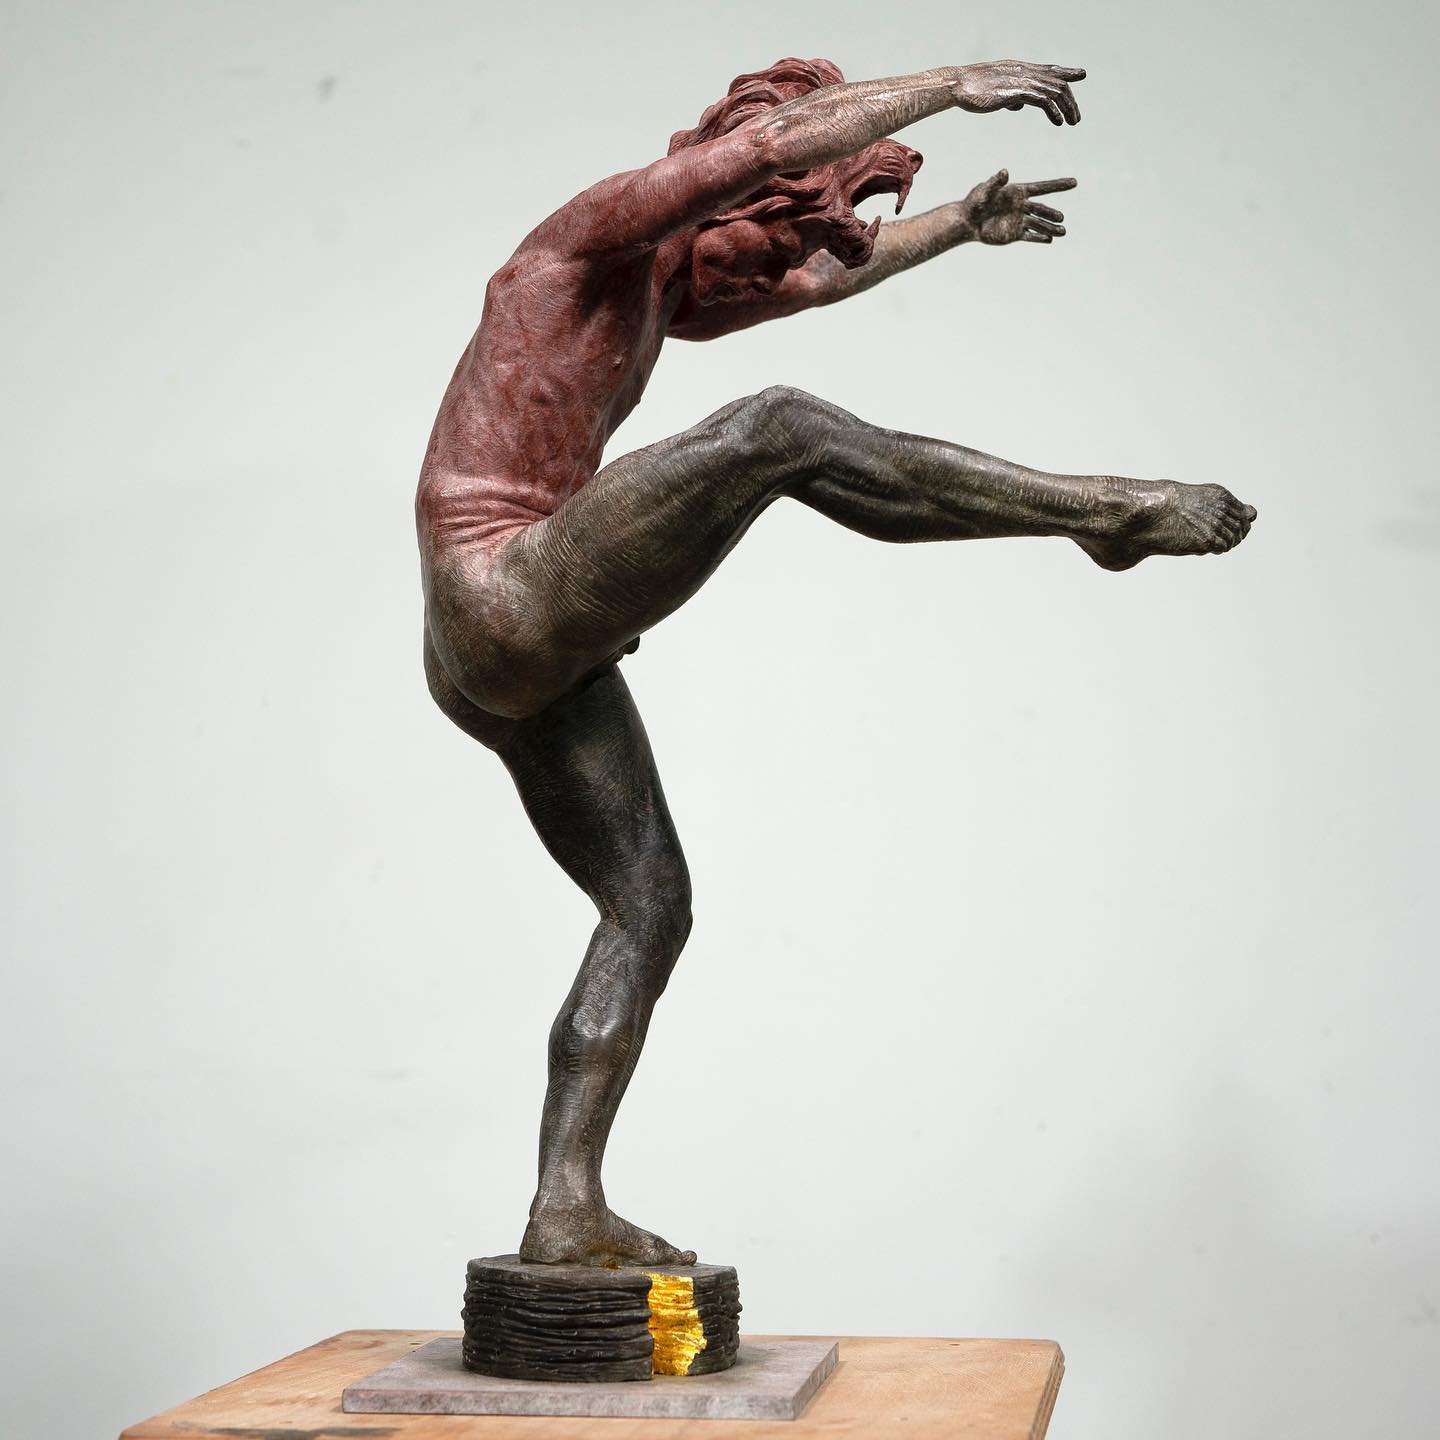 Solstice of Leo

#sculptureart #bronze